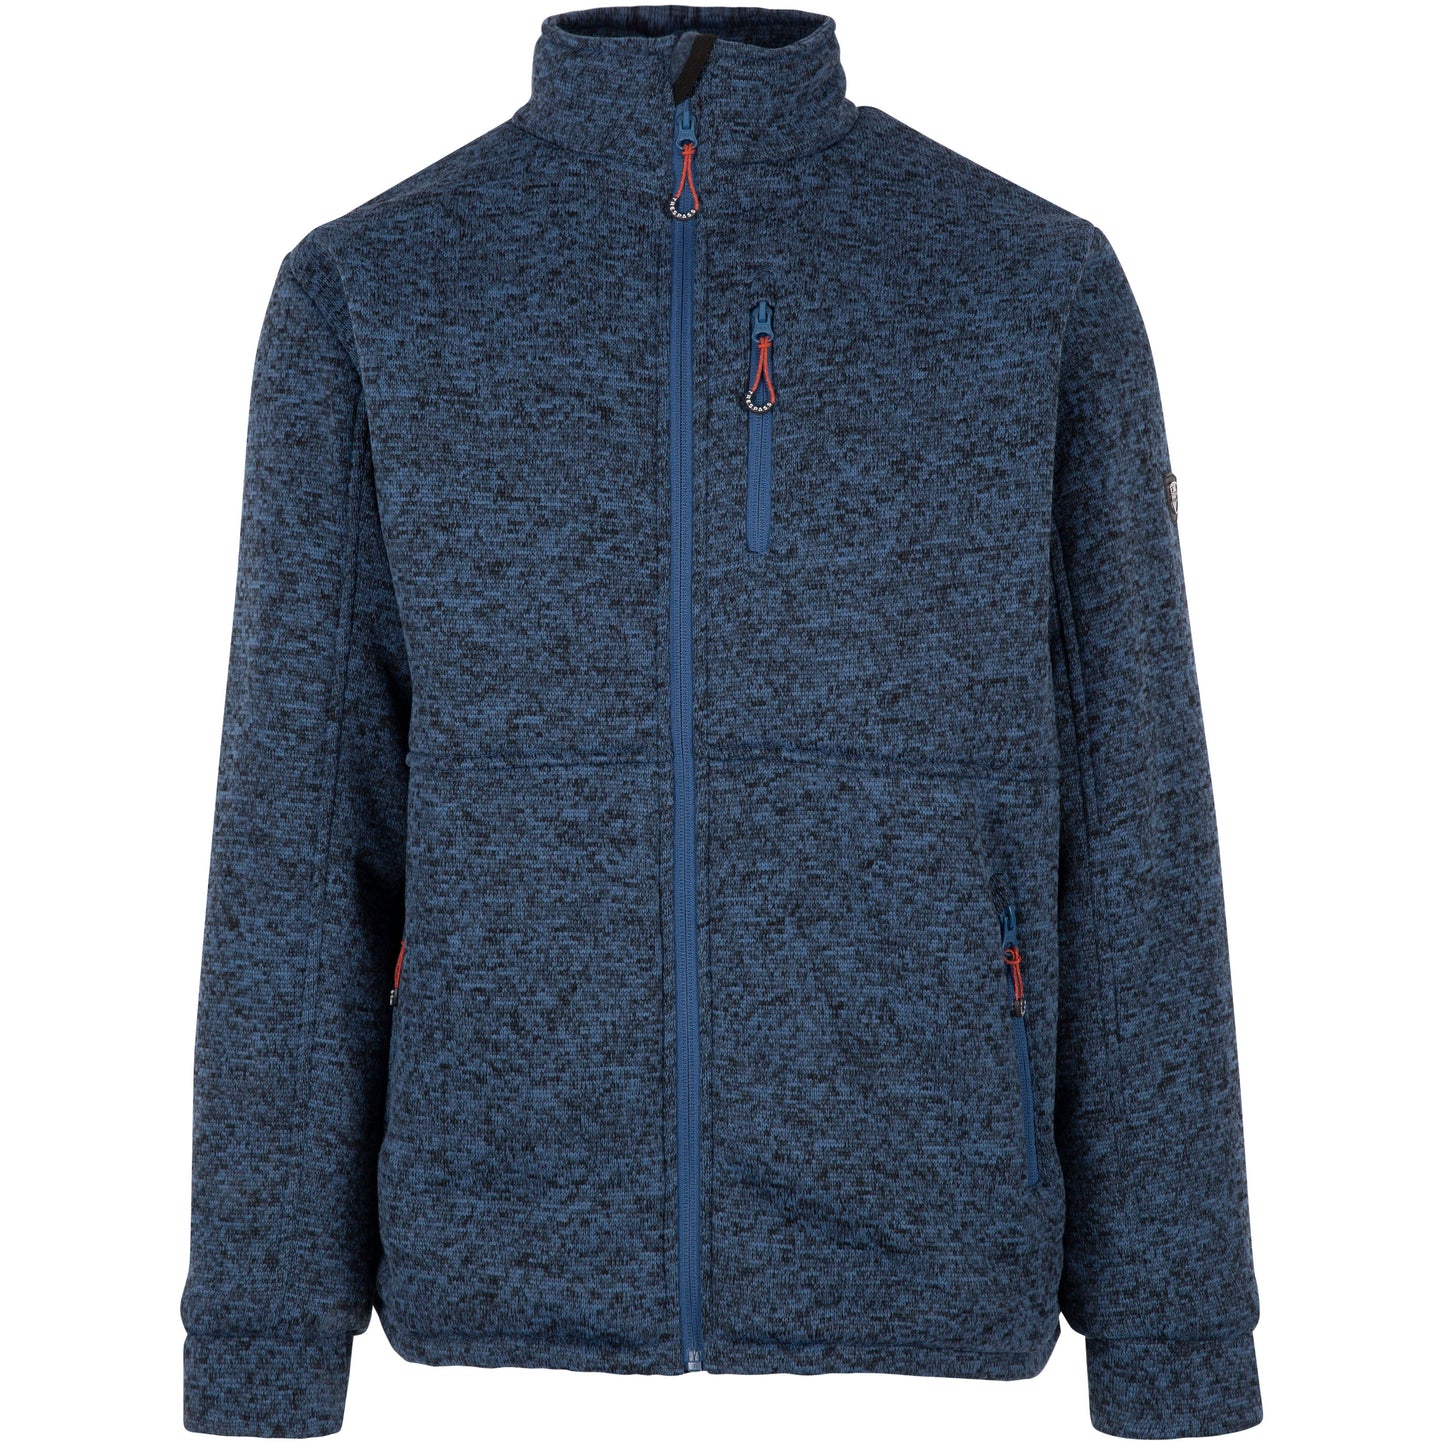 Ampney Men's Fleece Jacket with Sherpa Lining in Smokey Blue